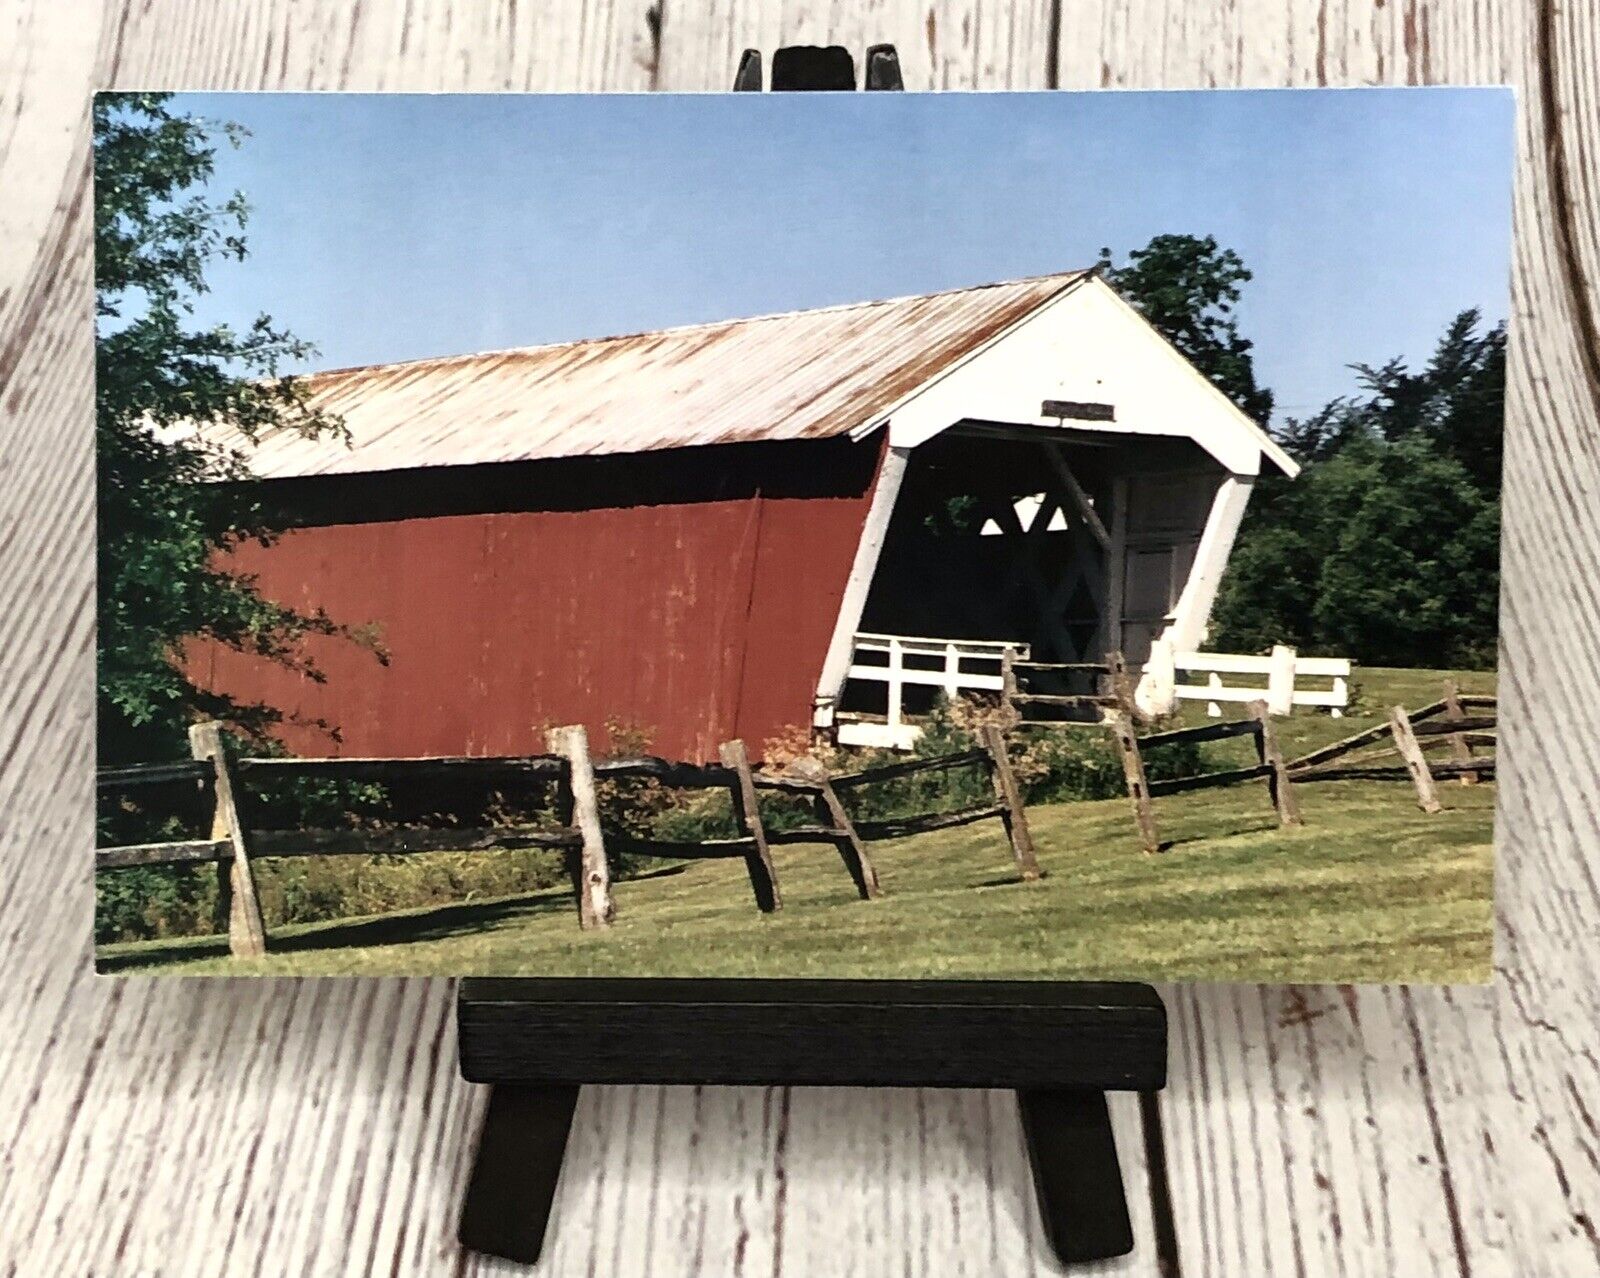 Imes Covered Bridge St. Charles Iowa IA Vintage Postcard